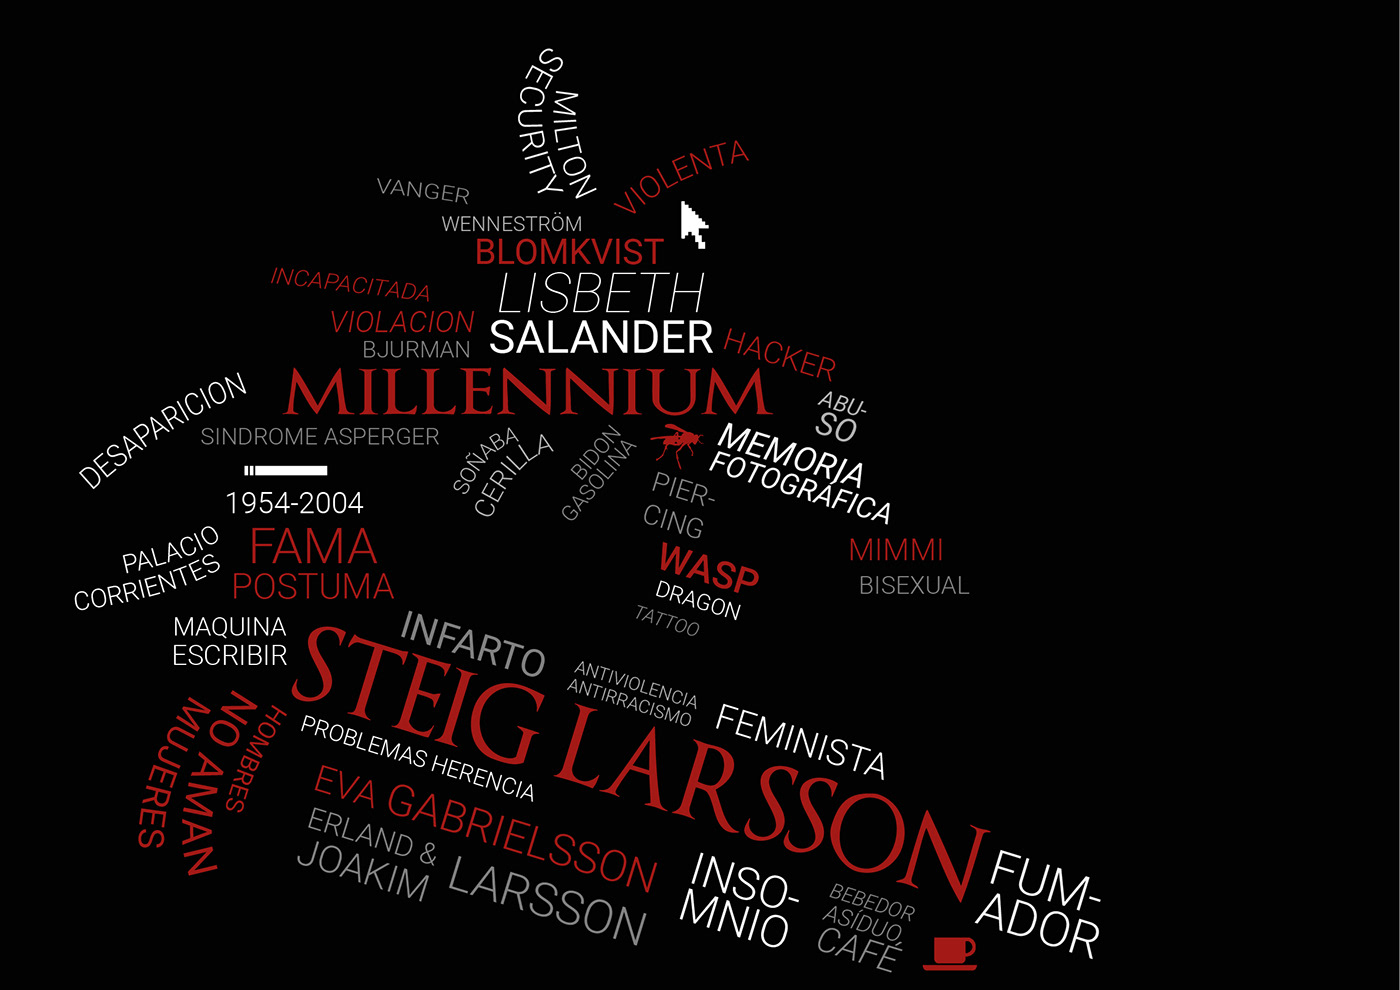 Millennium lisbeth salander Steig Larsson infographic